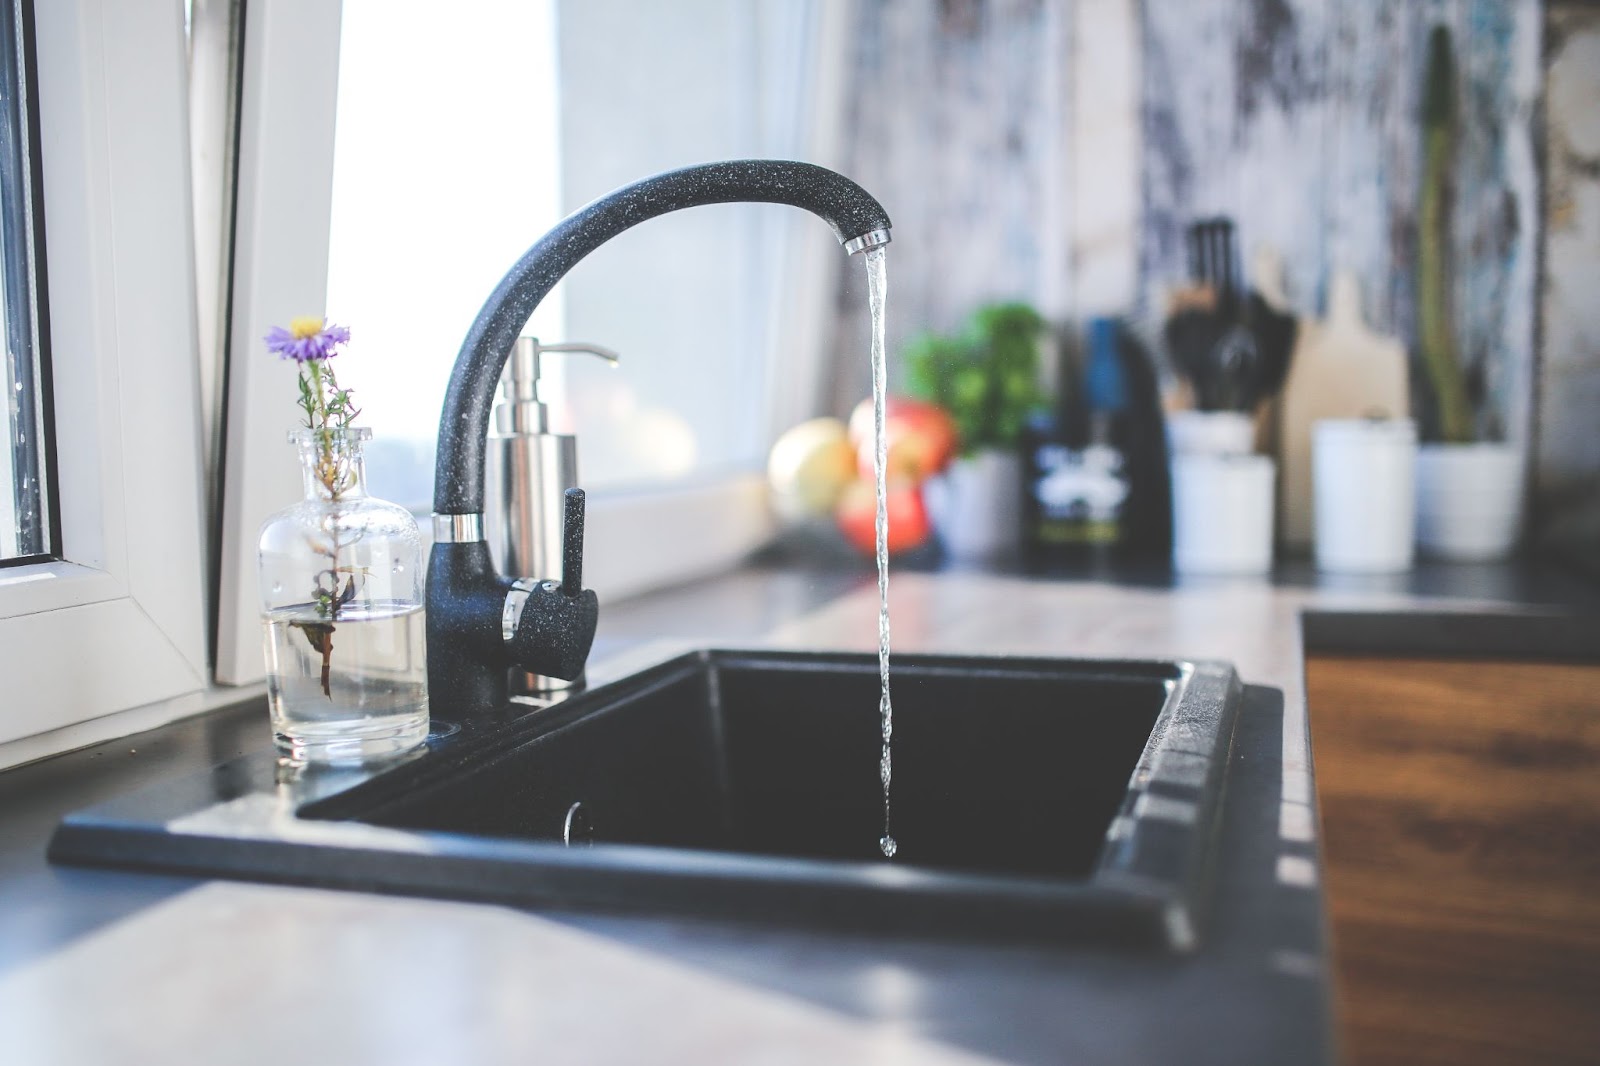 Black Stainless Steel Sink: A Modern Twist on Classic Kitchen Design